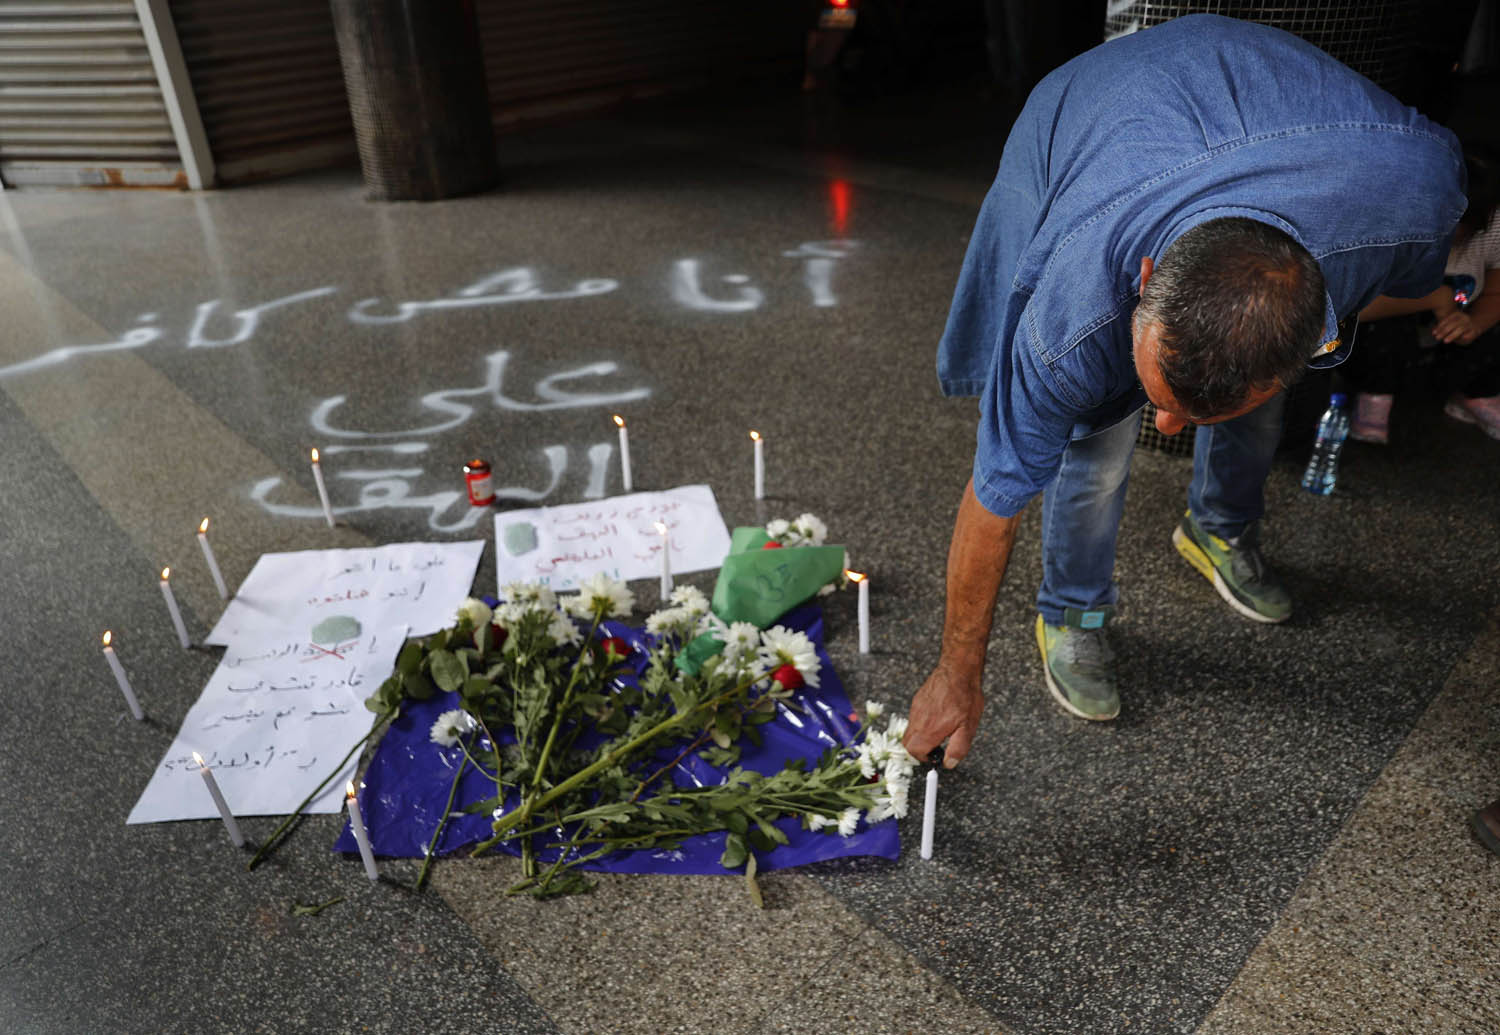 لبناني يضع زهورا على مكان انتحار لبناني قتل نفسه احتجاجا على الأزمة الاقتصادية